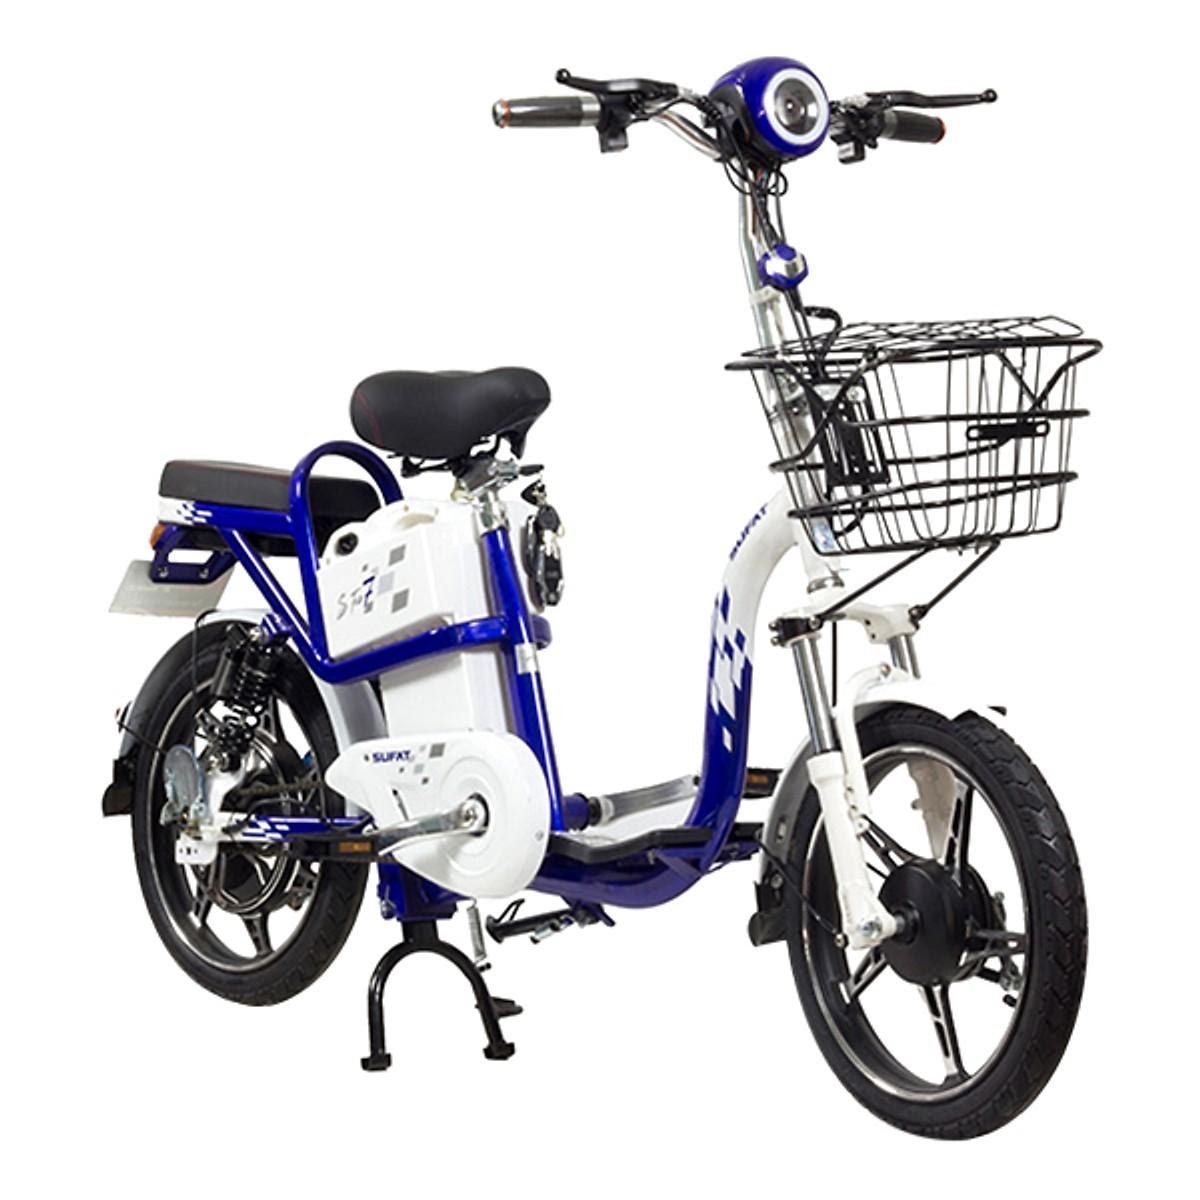 10 mẫu xe đạp điện mới nhất kiểu dáng đẹp hiện đại giá từ 8tr